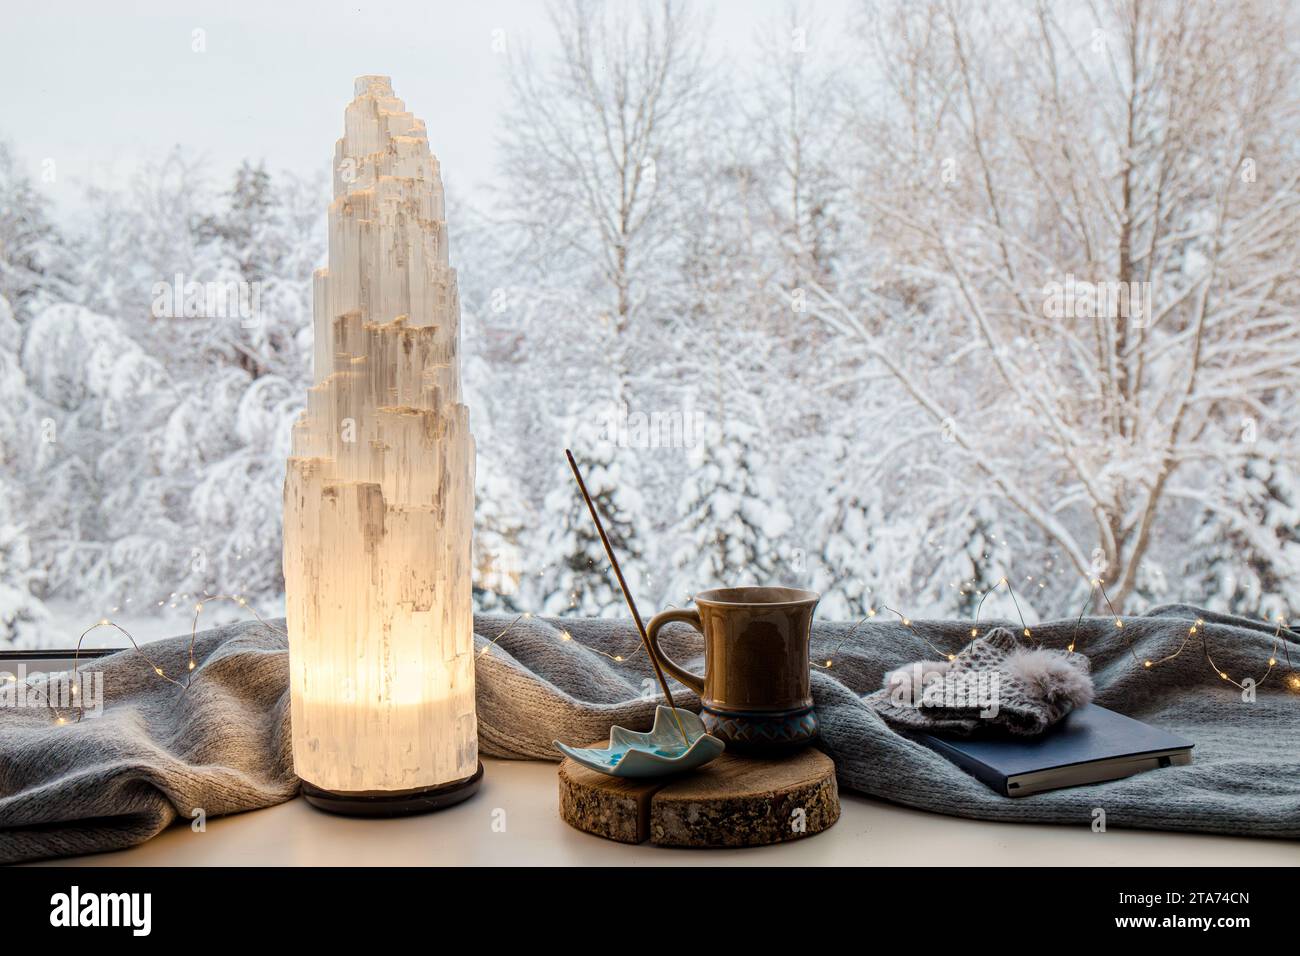 Accogliente casa invernale con lampada elettrica a torre in cristallo selenite naturale illuminata su davanzale, sciarpa e guanti di colore grigio, quaderno di carta, tè. Foto Stock